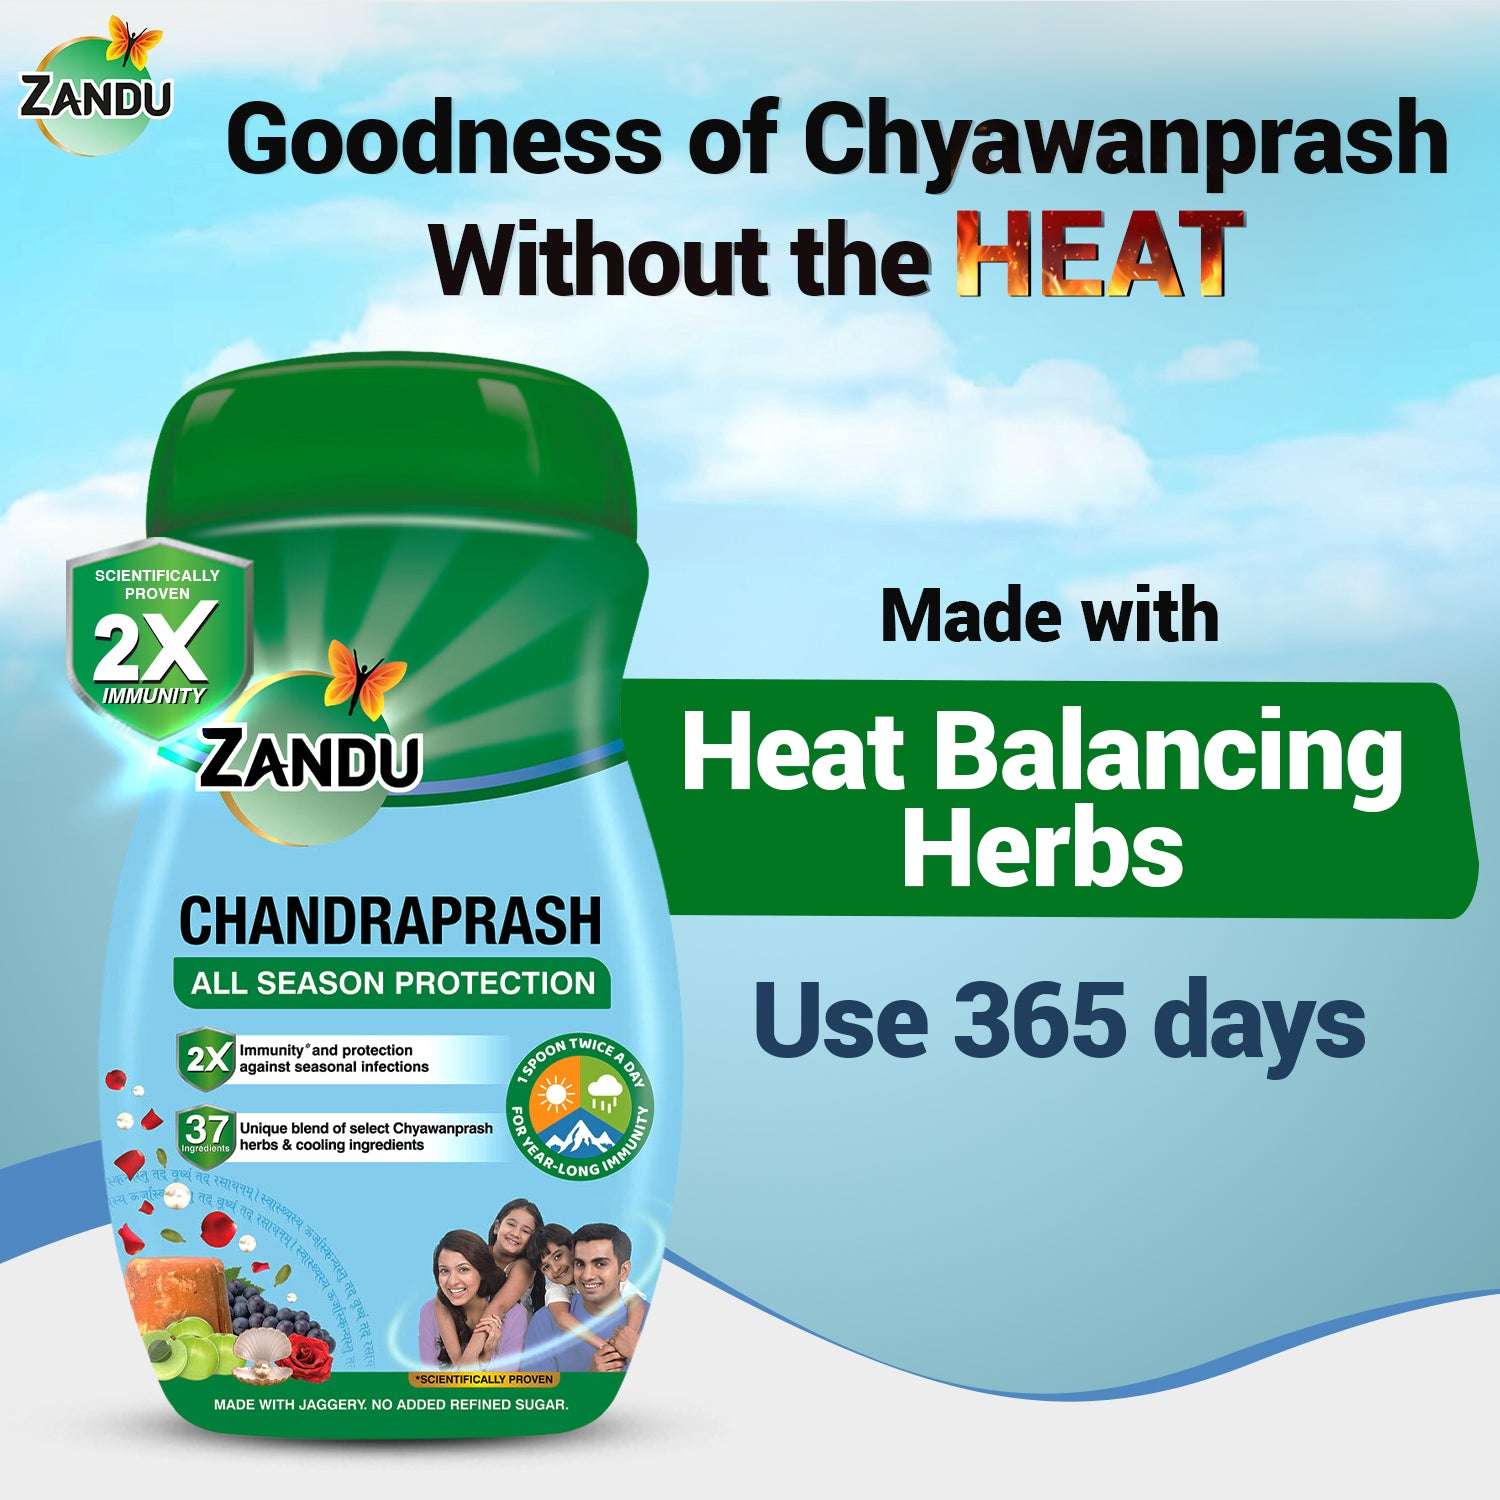 Beat the Heat with Zandu Chandraprash